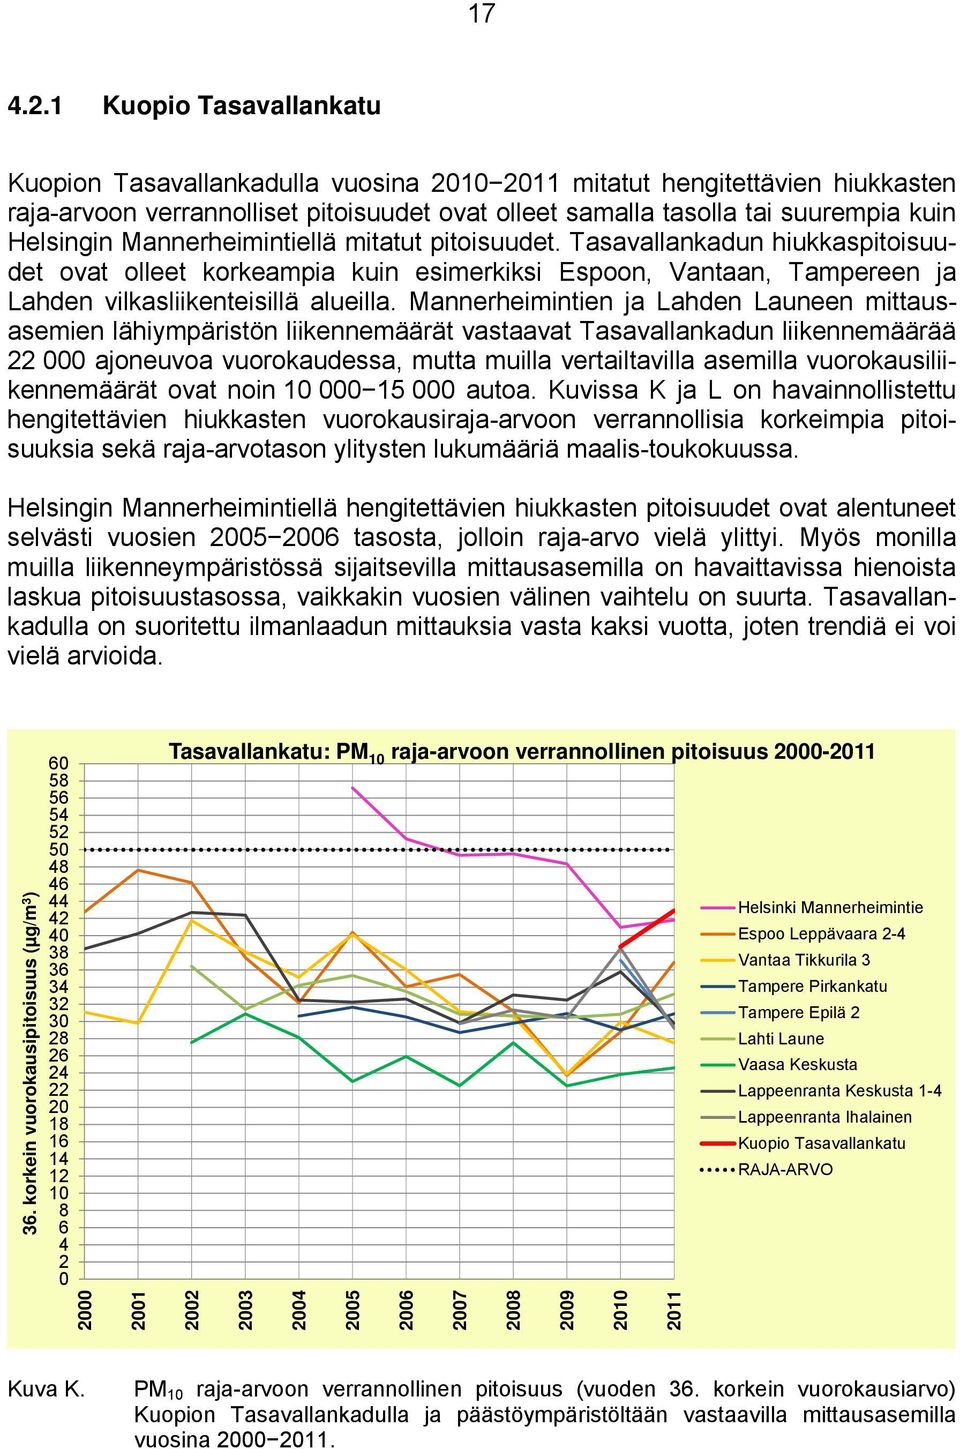 Mannerheimintiellä mitatut pitoisuudet. Tasavallankadun hiukkaspitoisuudet ovat olleet korkeampia kuin esimerkiksi Espoon, Vantaan, Tampereen ja Lahden vilkasliikenteisillä alueilla.